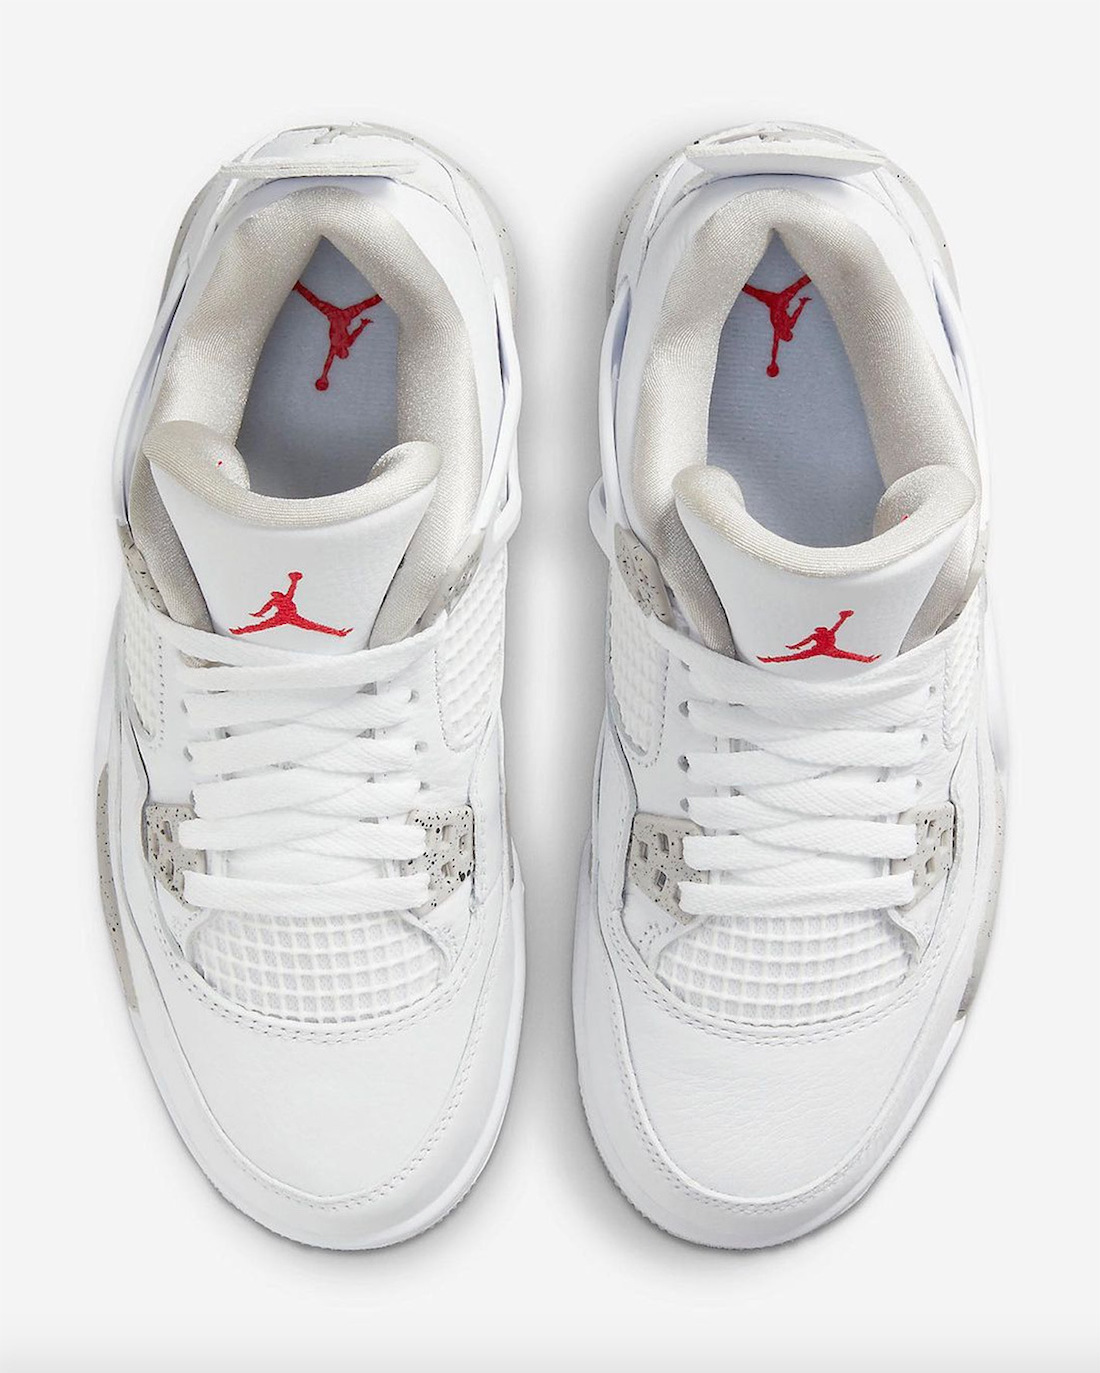 Air Jordan 4 White Oreo GS Release Date